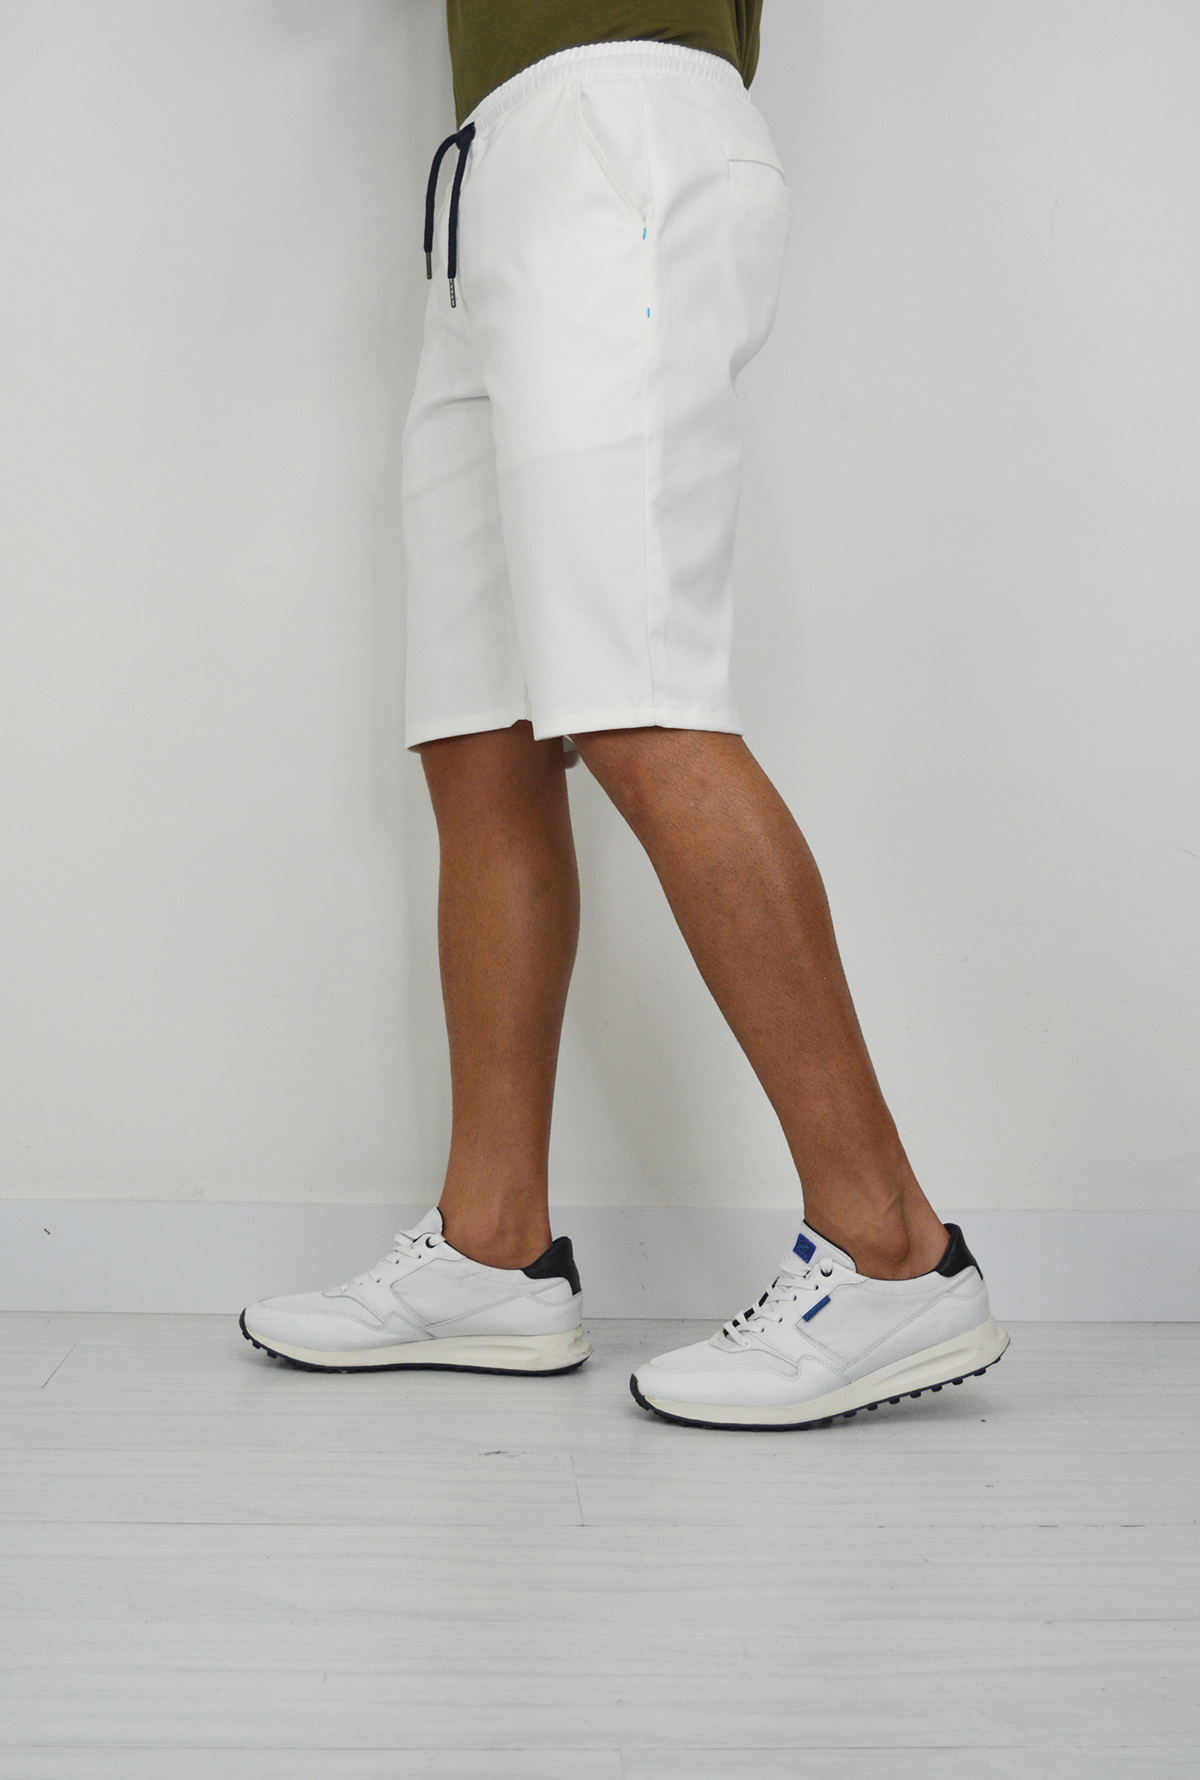 Pantalón Blanco Para Hombre DPC1029 – Delascar